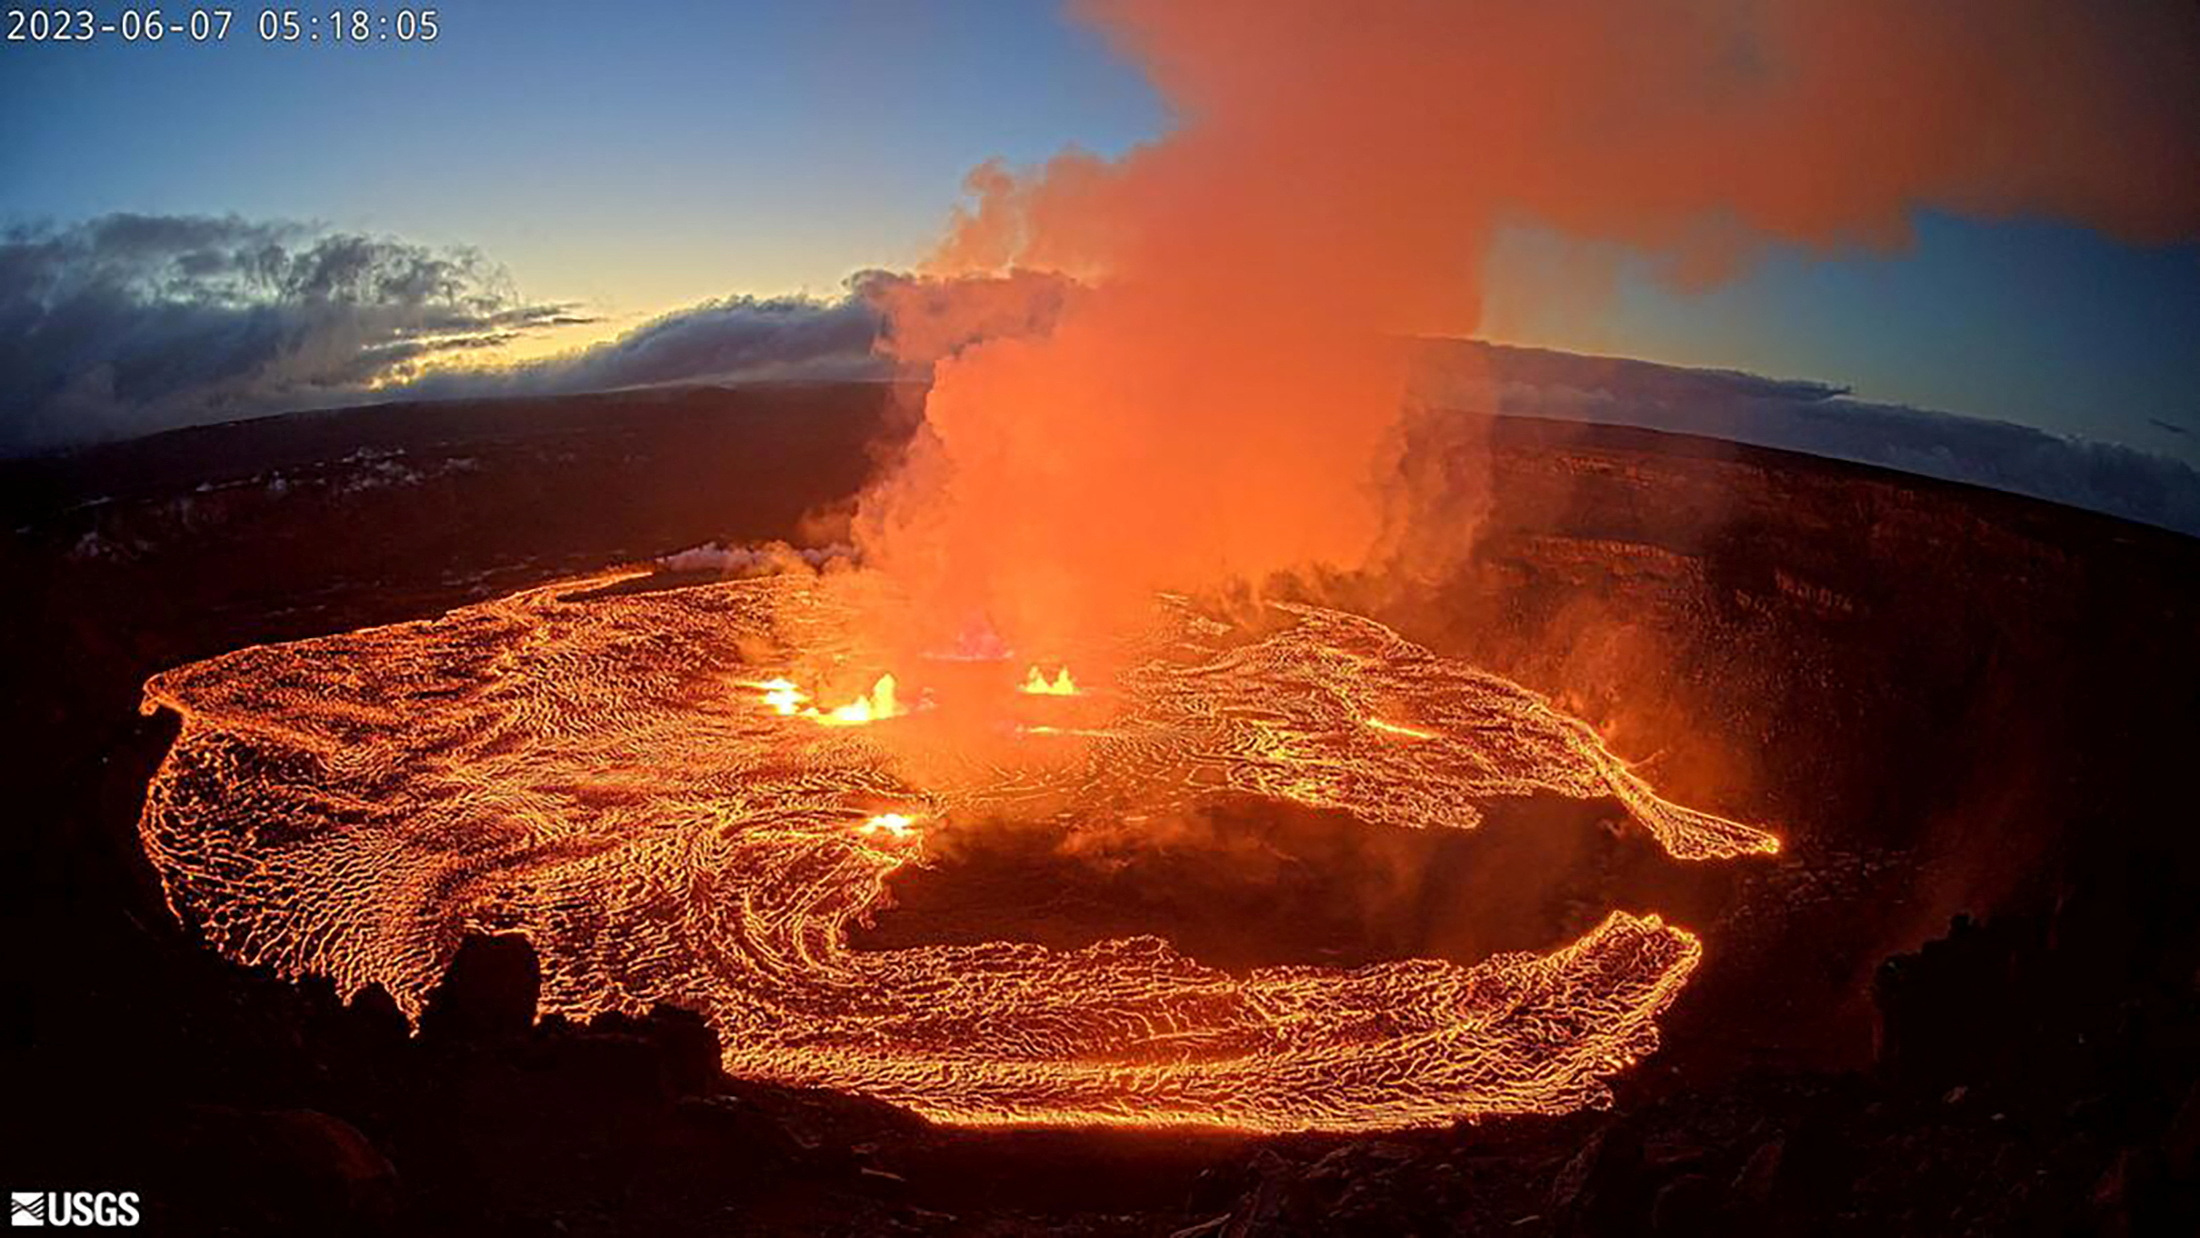 II. Understanding the Kilauea Volcano